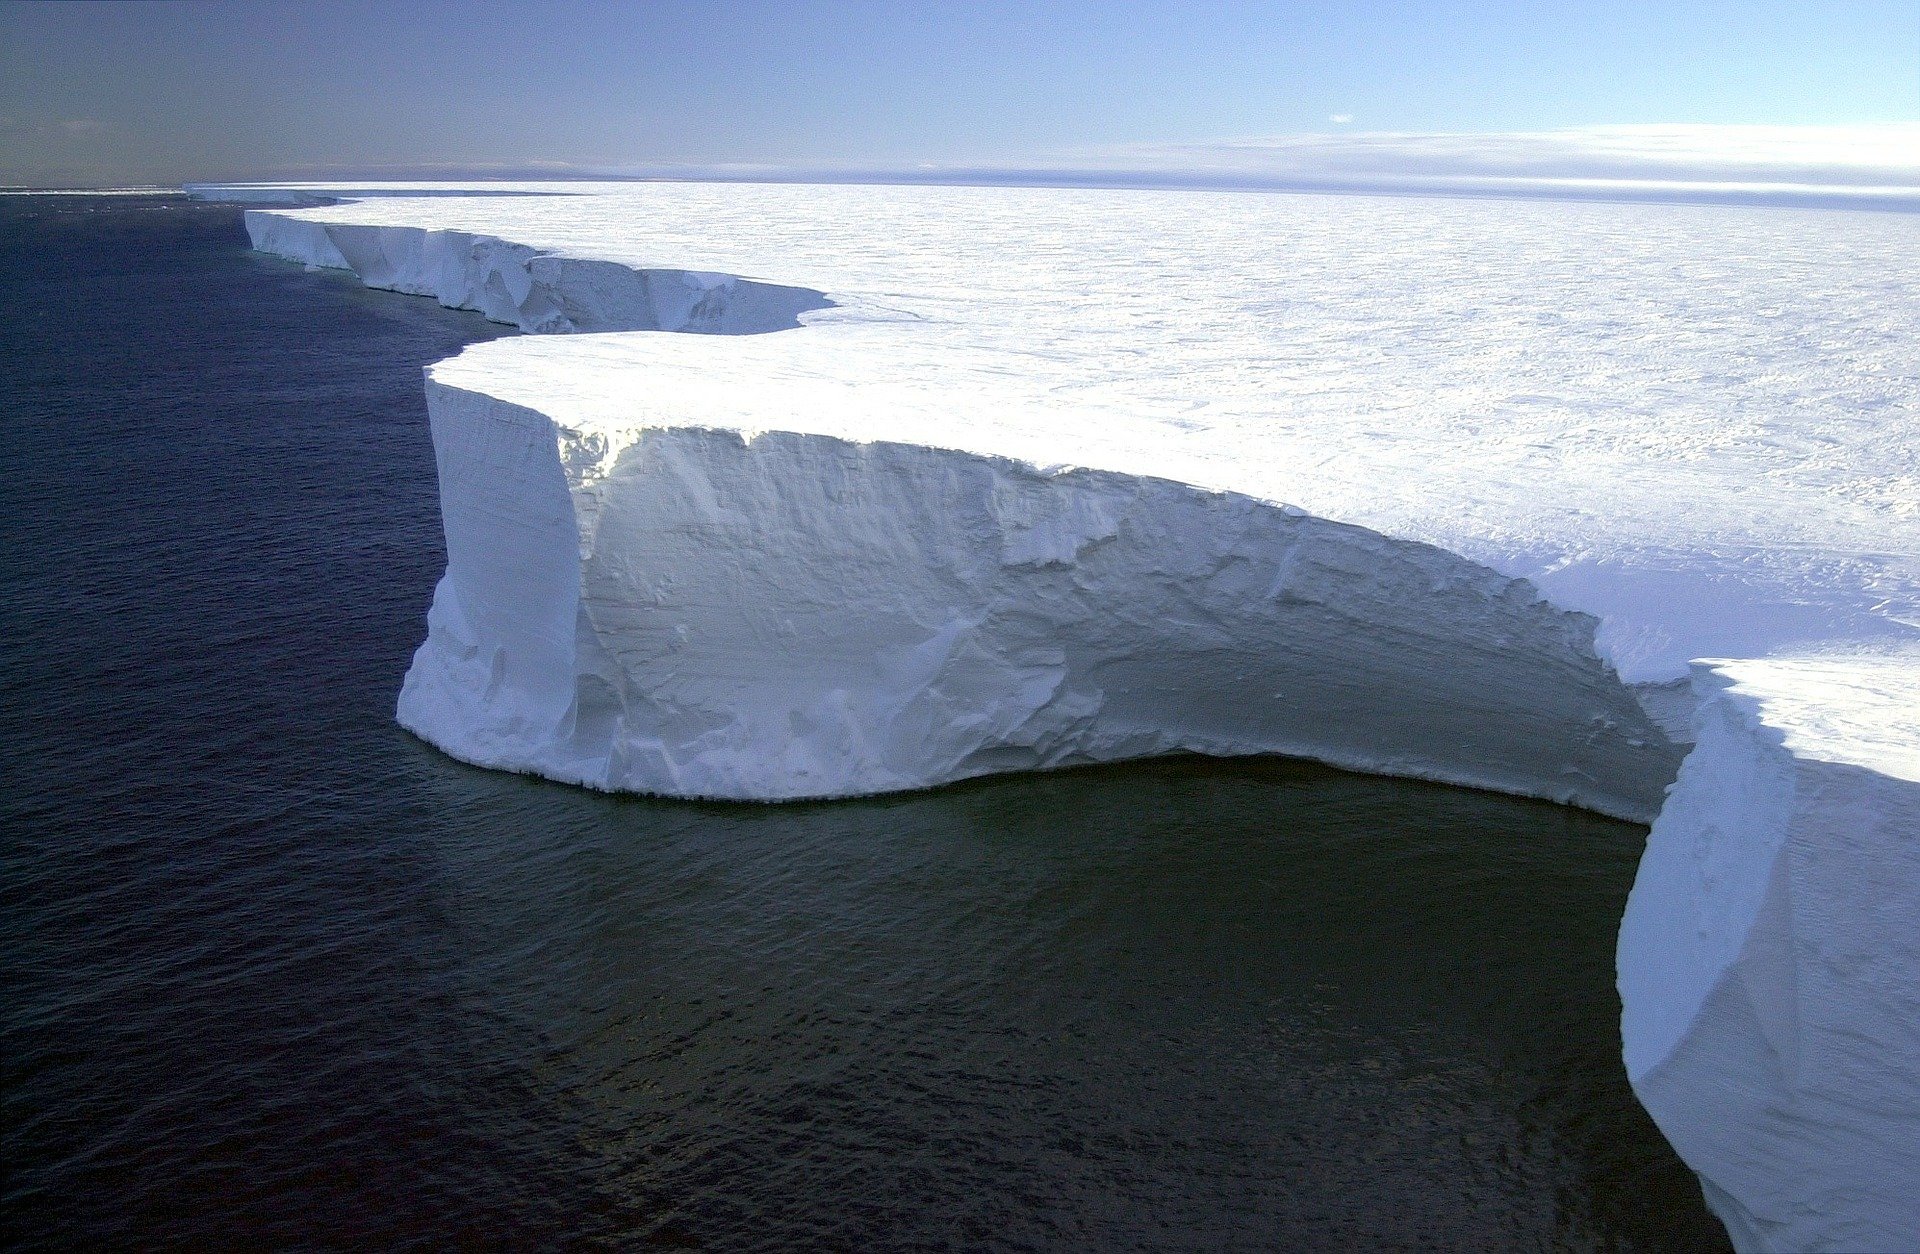 a68, iceberg, mondo, antartide, ghiacciai, scioglimento, tragitto, oceano, animali, conseguenze, ambiente, cambiamento climatico, temperatura, scienziati, studio, analisi, Energy Close-up Engineering